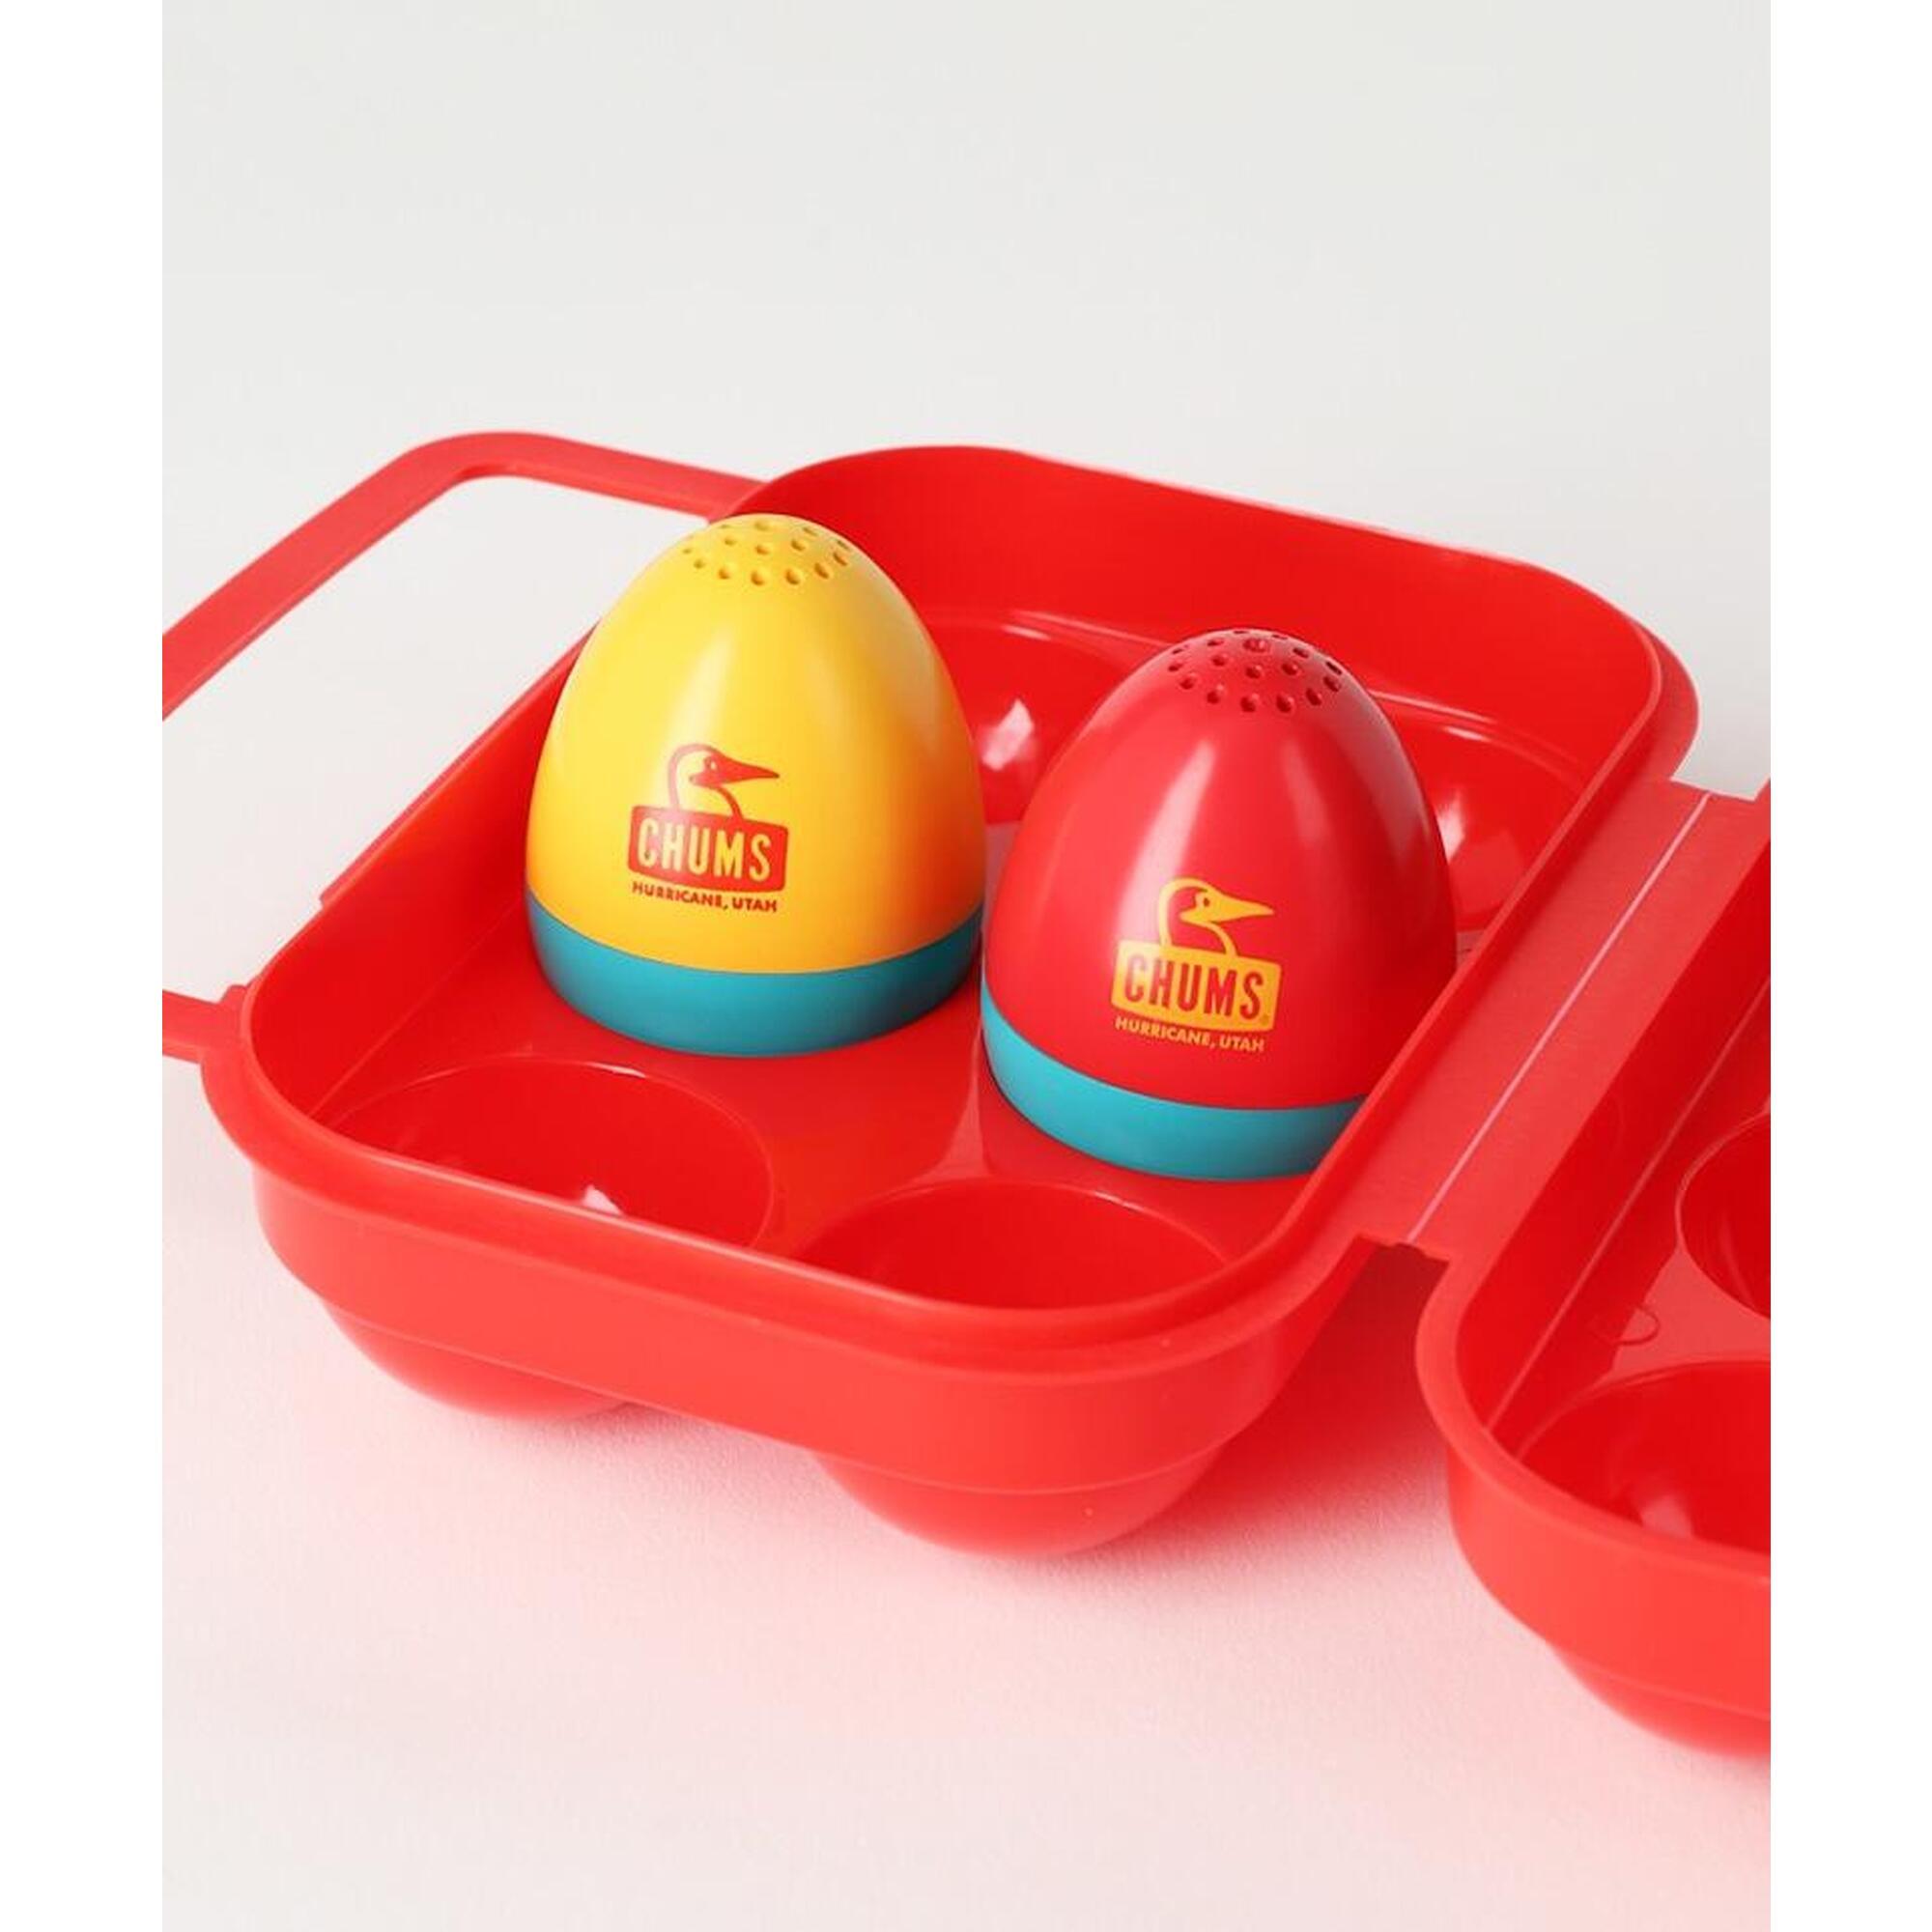 Booby Egg Salt & Pepper 雞蛋收納盒連胡椒粉及鹽樽